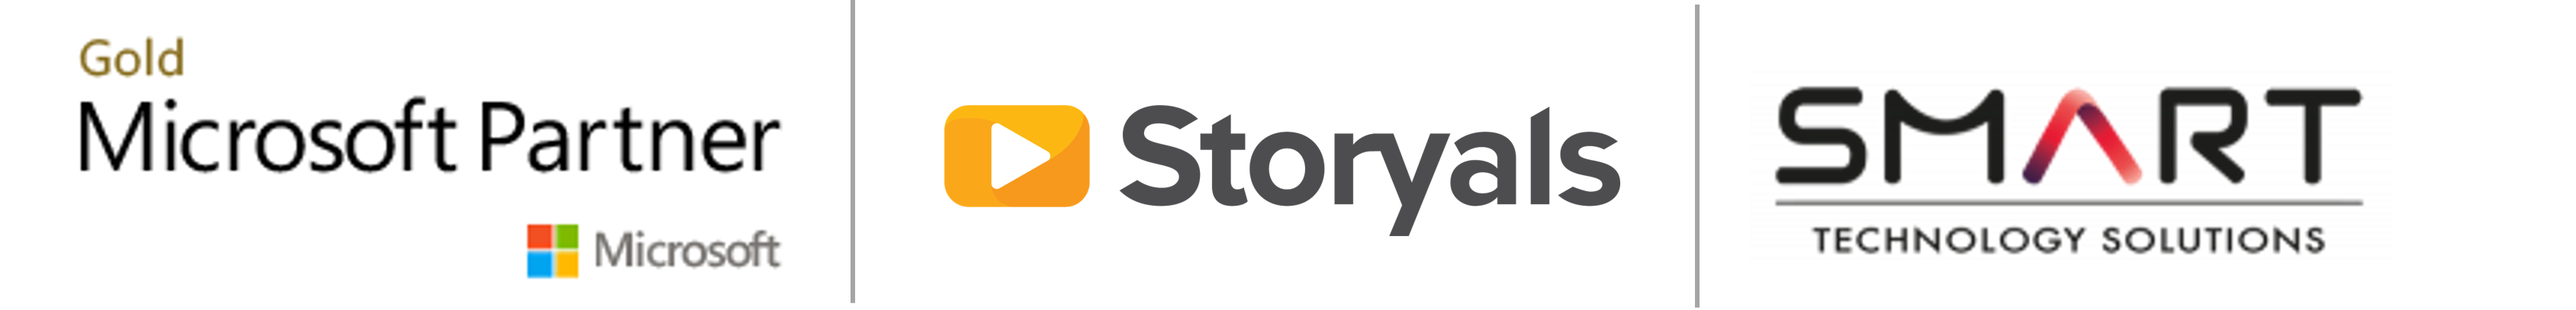 MS_Storyals_SMART logos-1